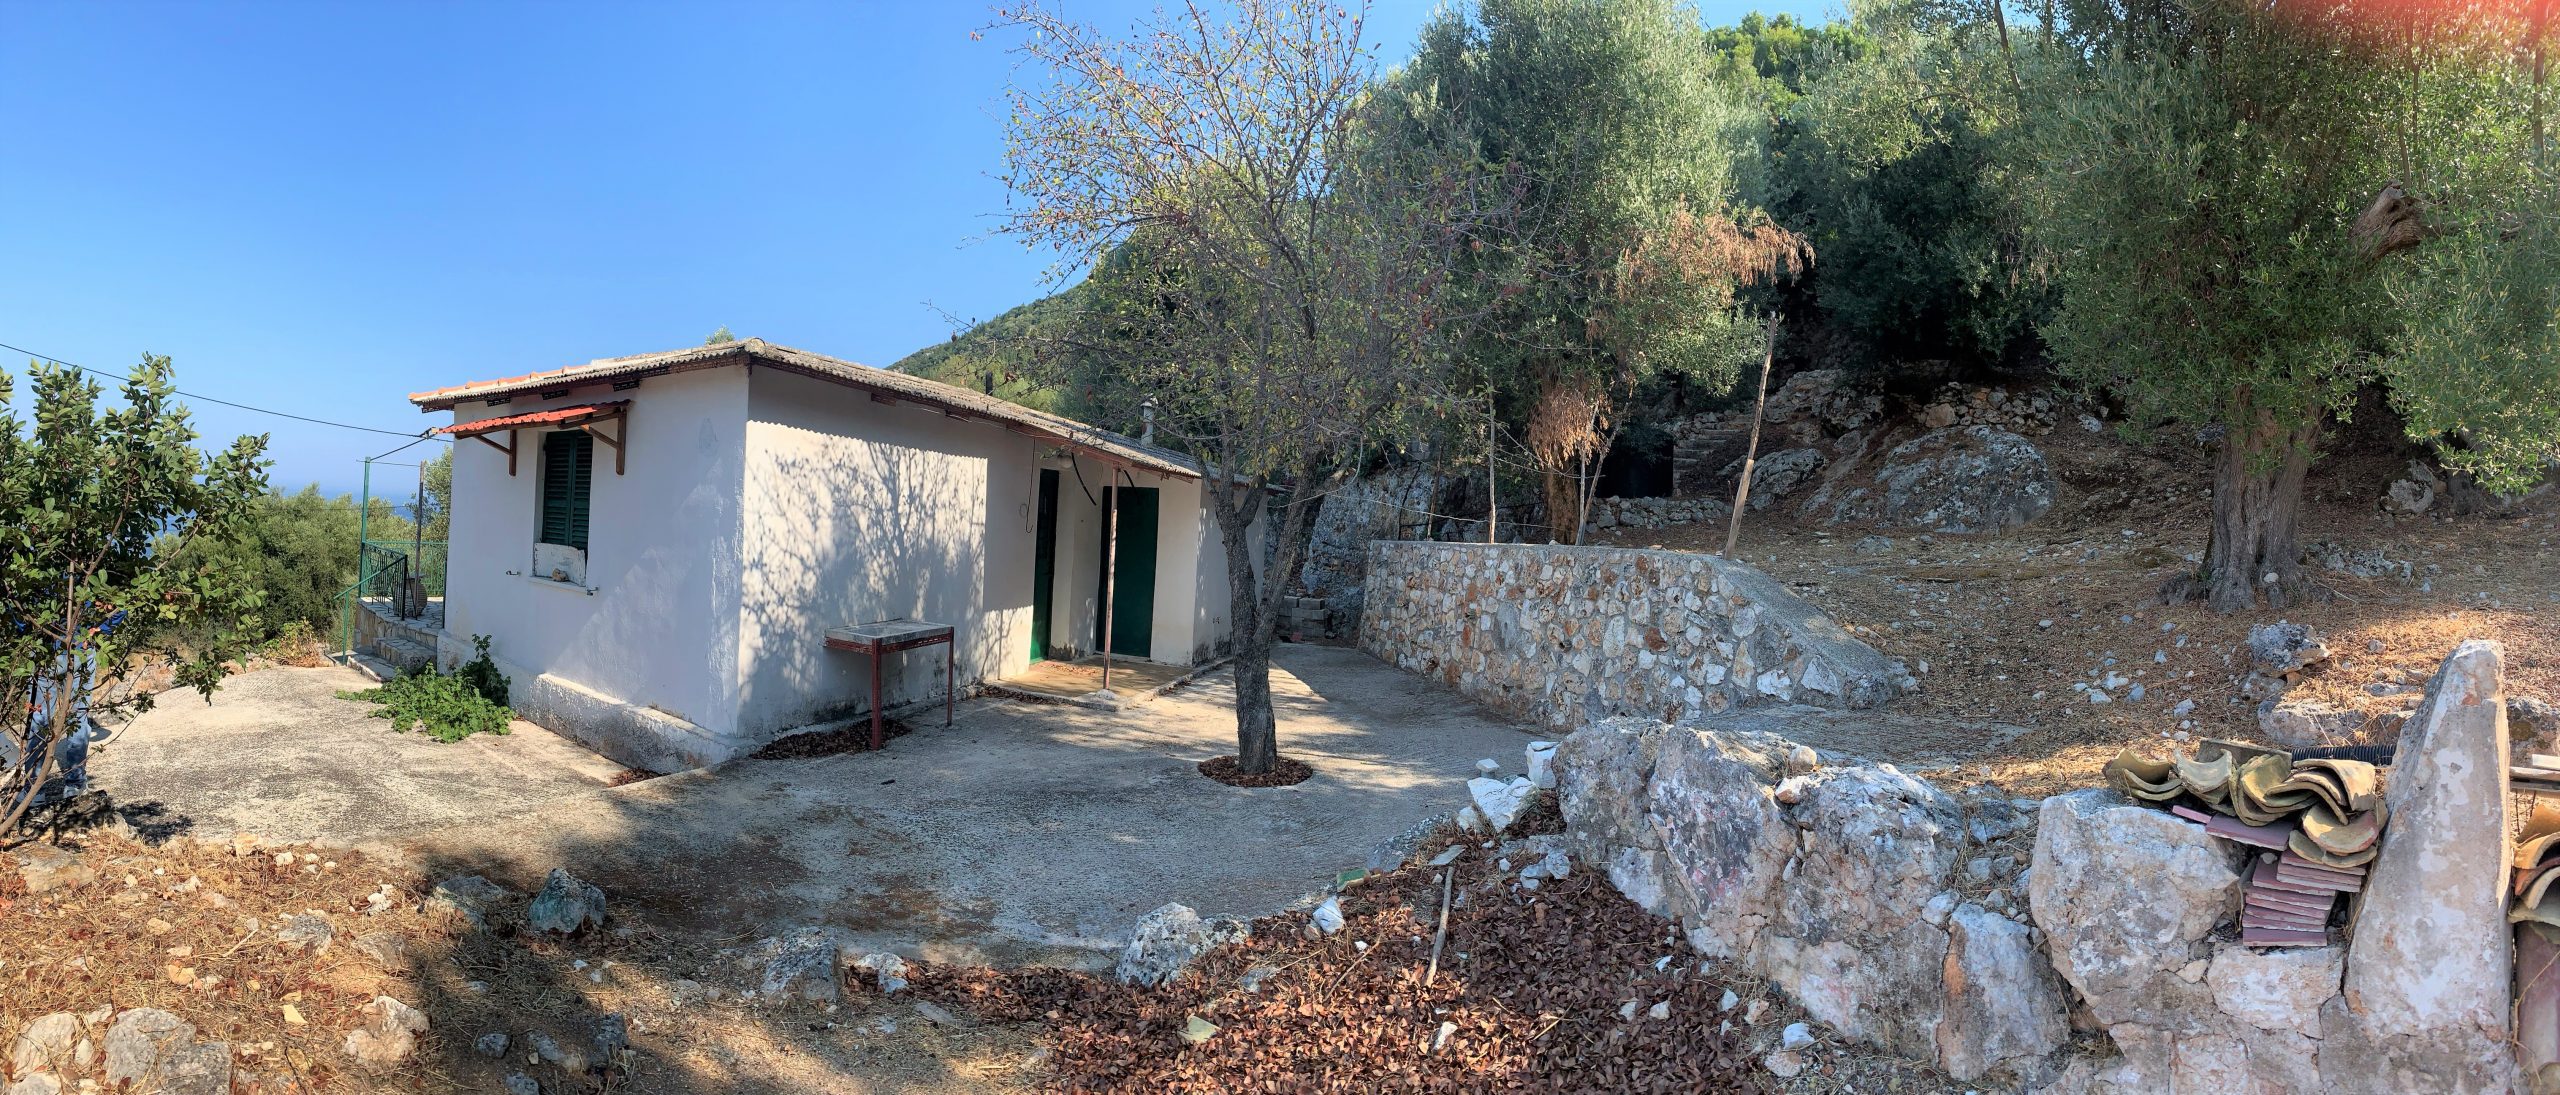 Υπαίθριος χώρος κατοικίας προς πώληση Ιφάκη Ελλάδα, Λευκάκι